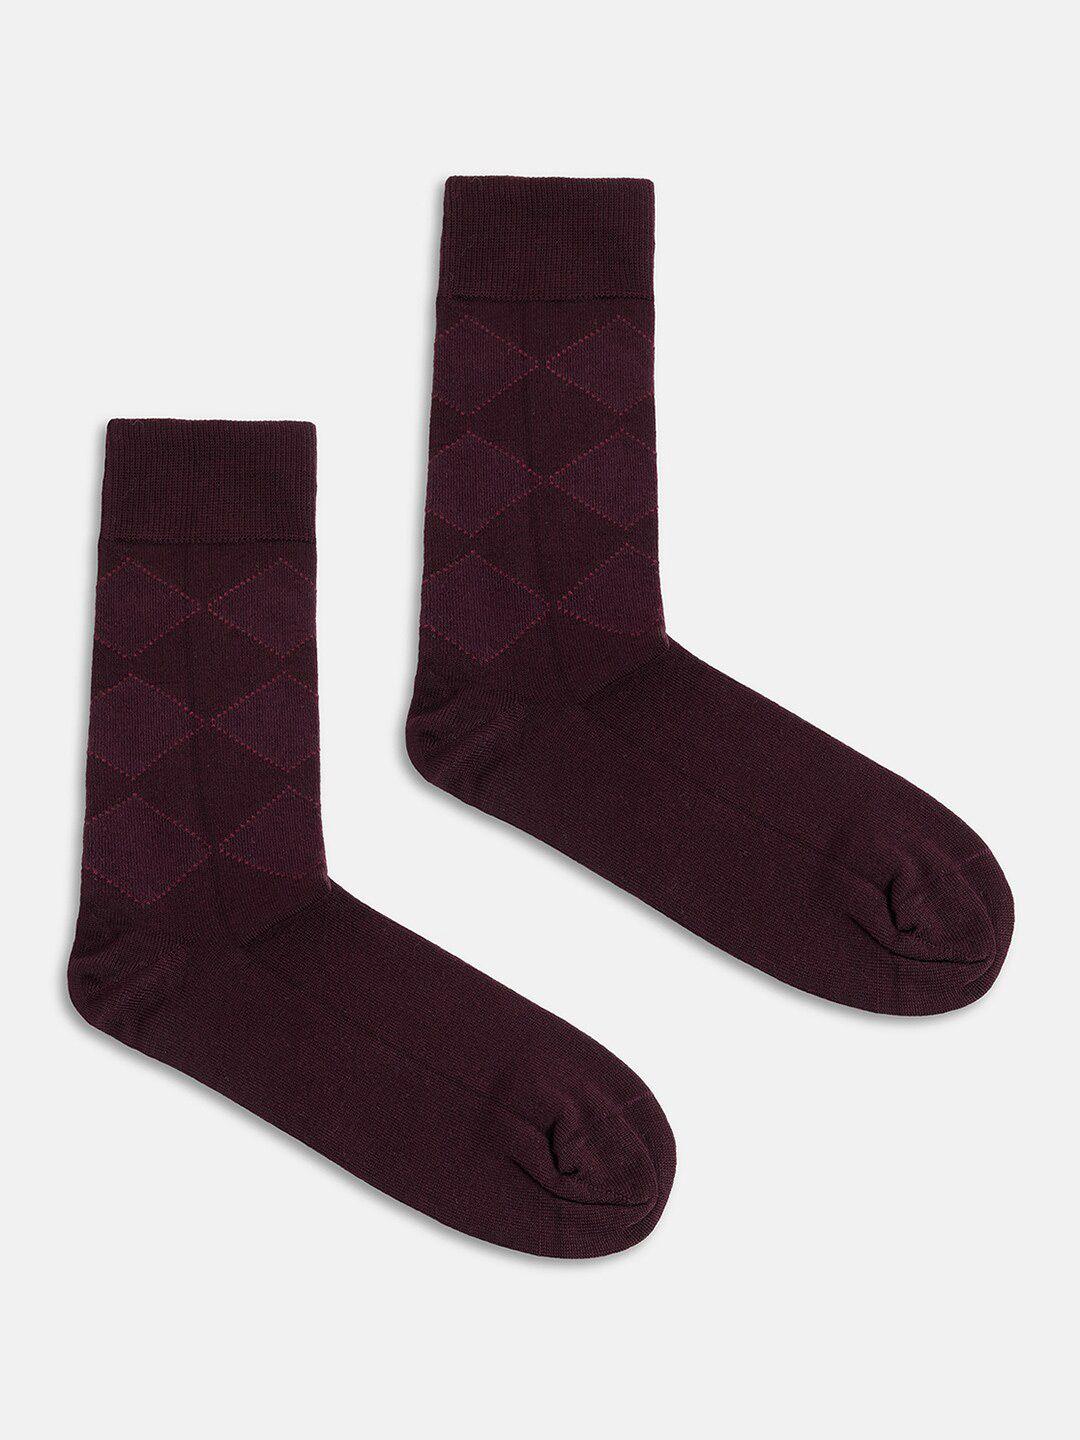 blackberrys-men-checked-calf-length-cotton-socks